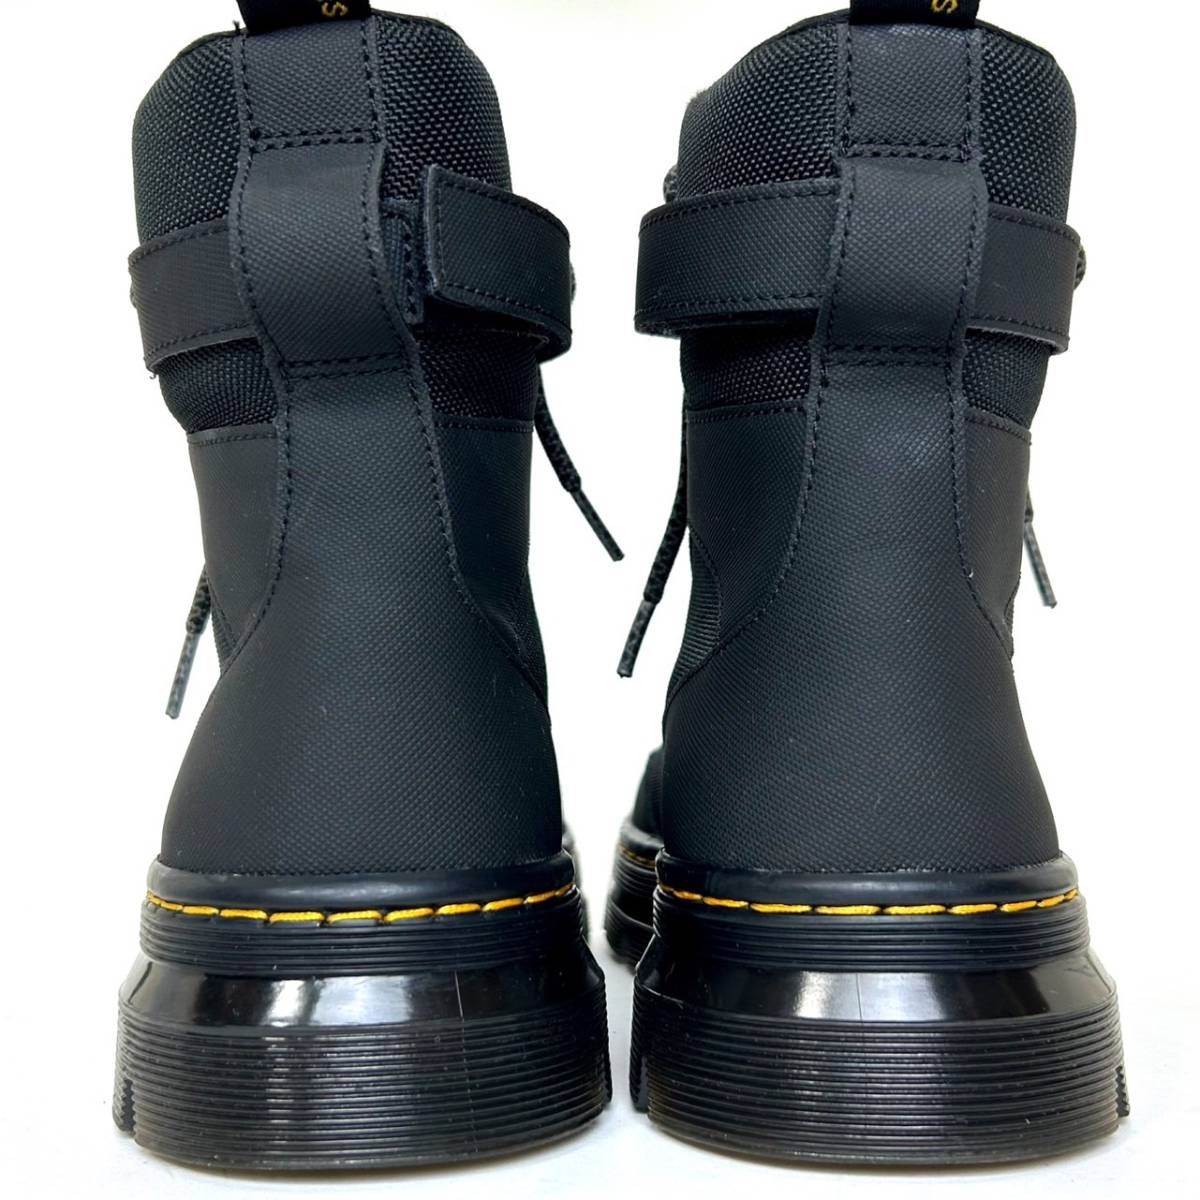 即決 使用少ない Dr.Martens ドクターマーチン メンズ UK7 26cm程度 ナイロン ブーツ 黒色 ブラック カジュアル ドレスシューズ 革靴 中古_画像7